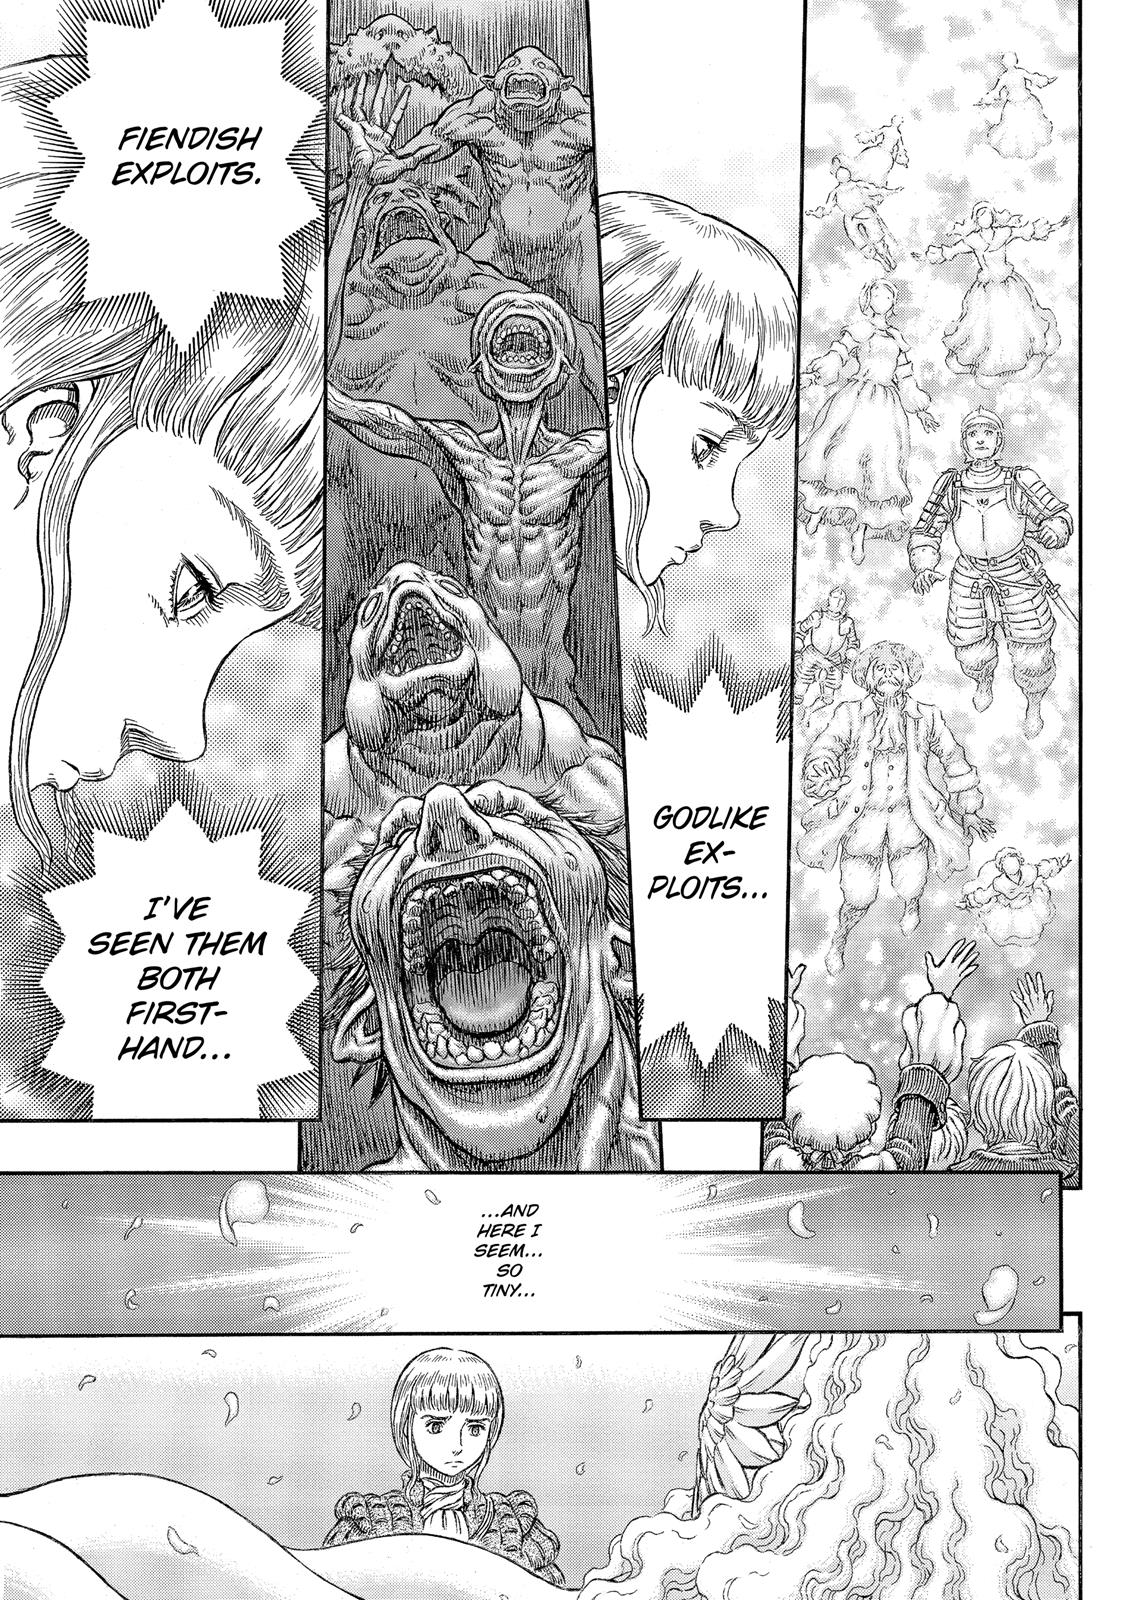 Berserk Manga Chapter 337 image 11